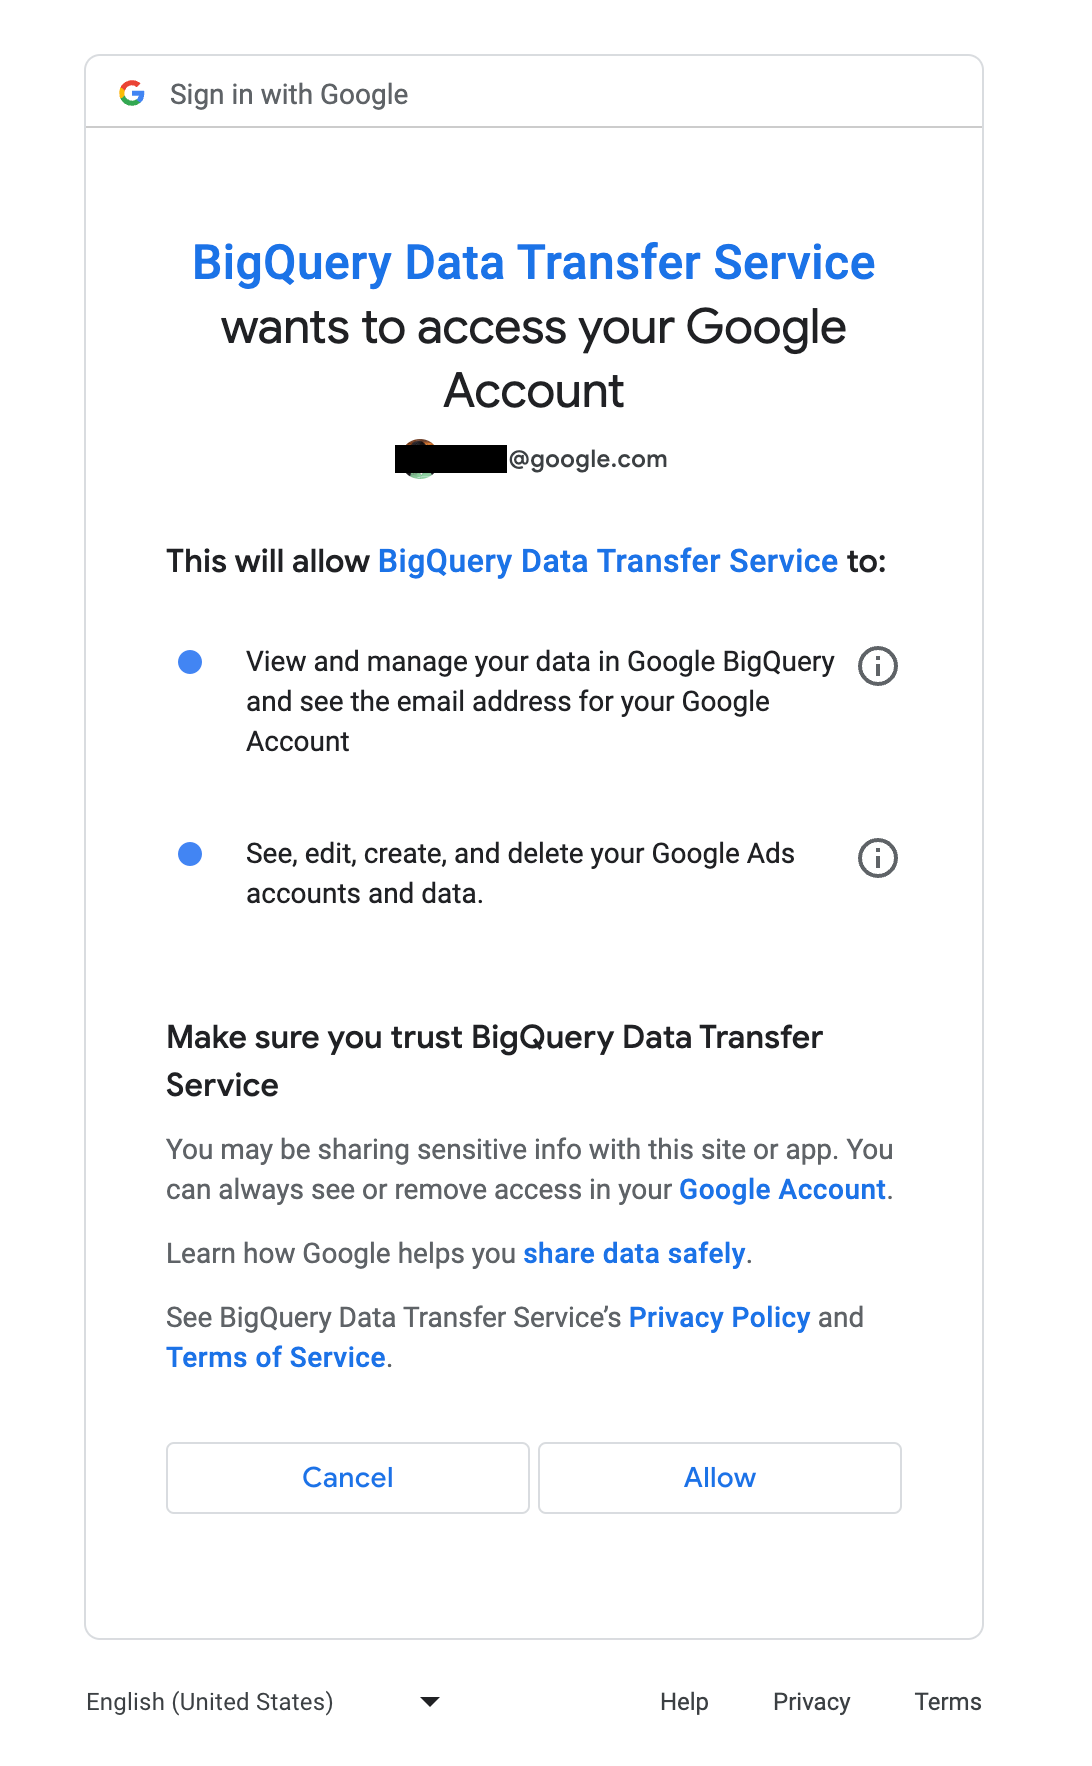 Consenti a BigQuery Data Transfer Service di accedere a Google Ads.